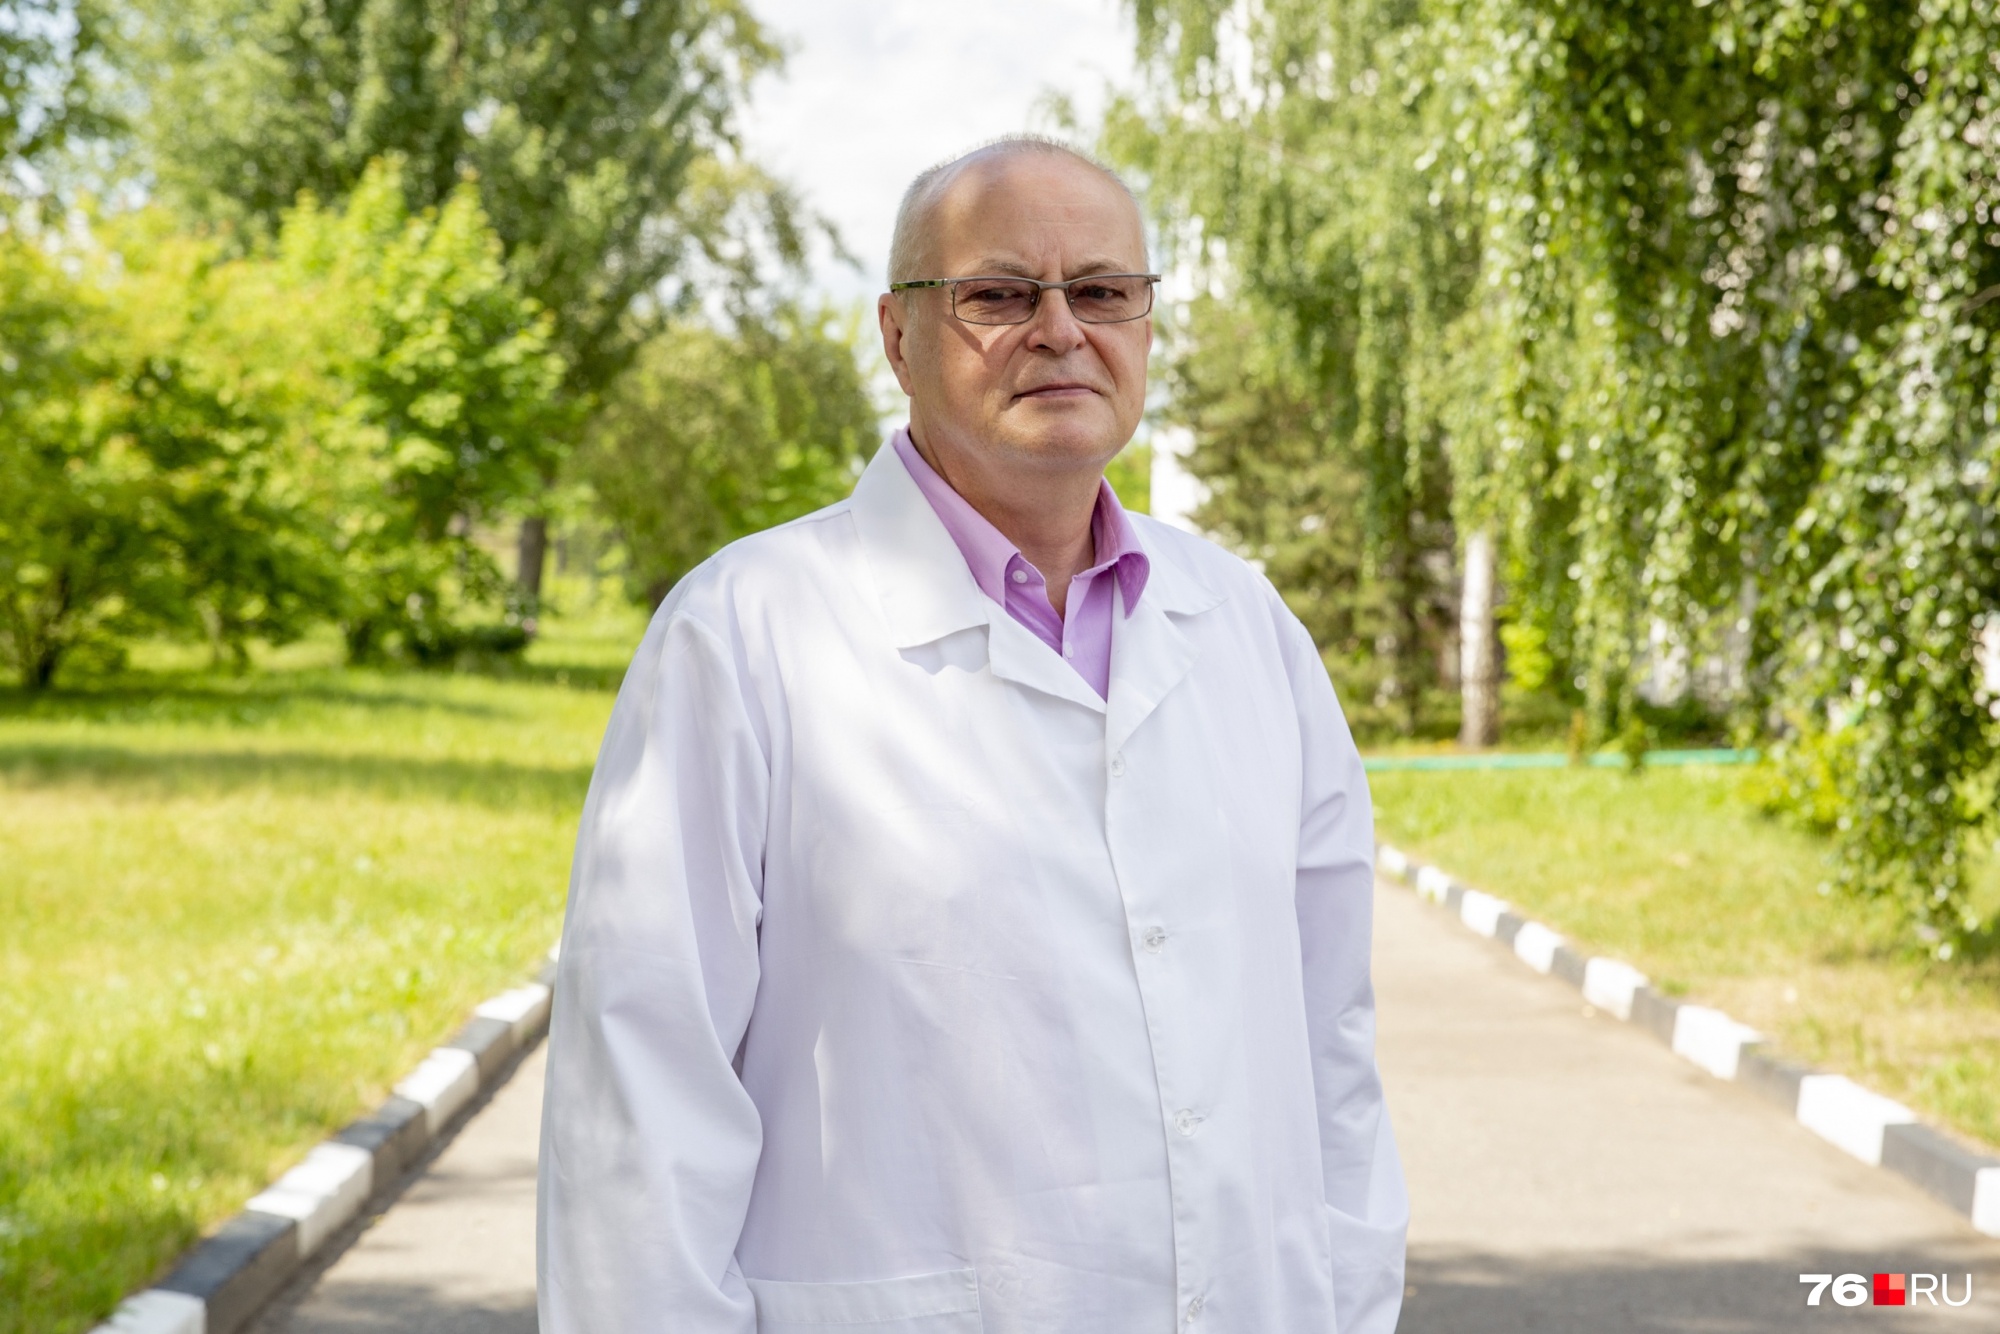 Андрей Живой много лет возглавляет станцию скорой помощи